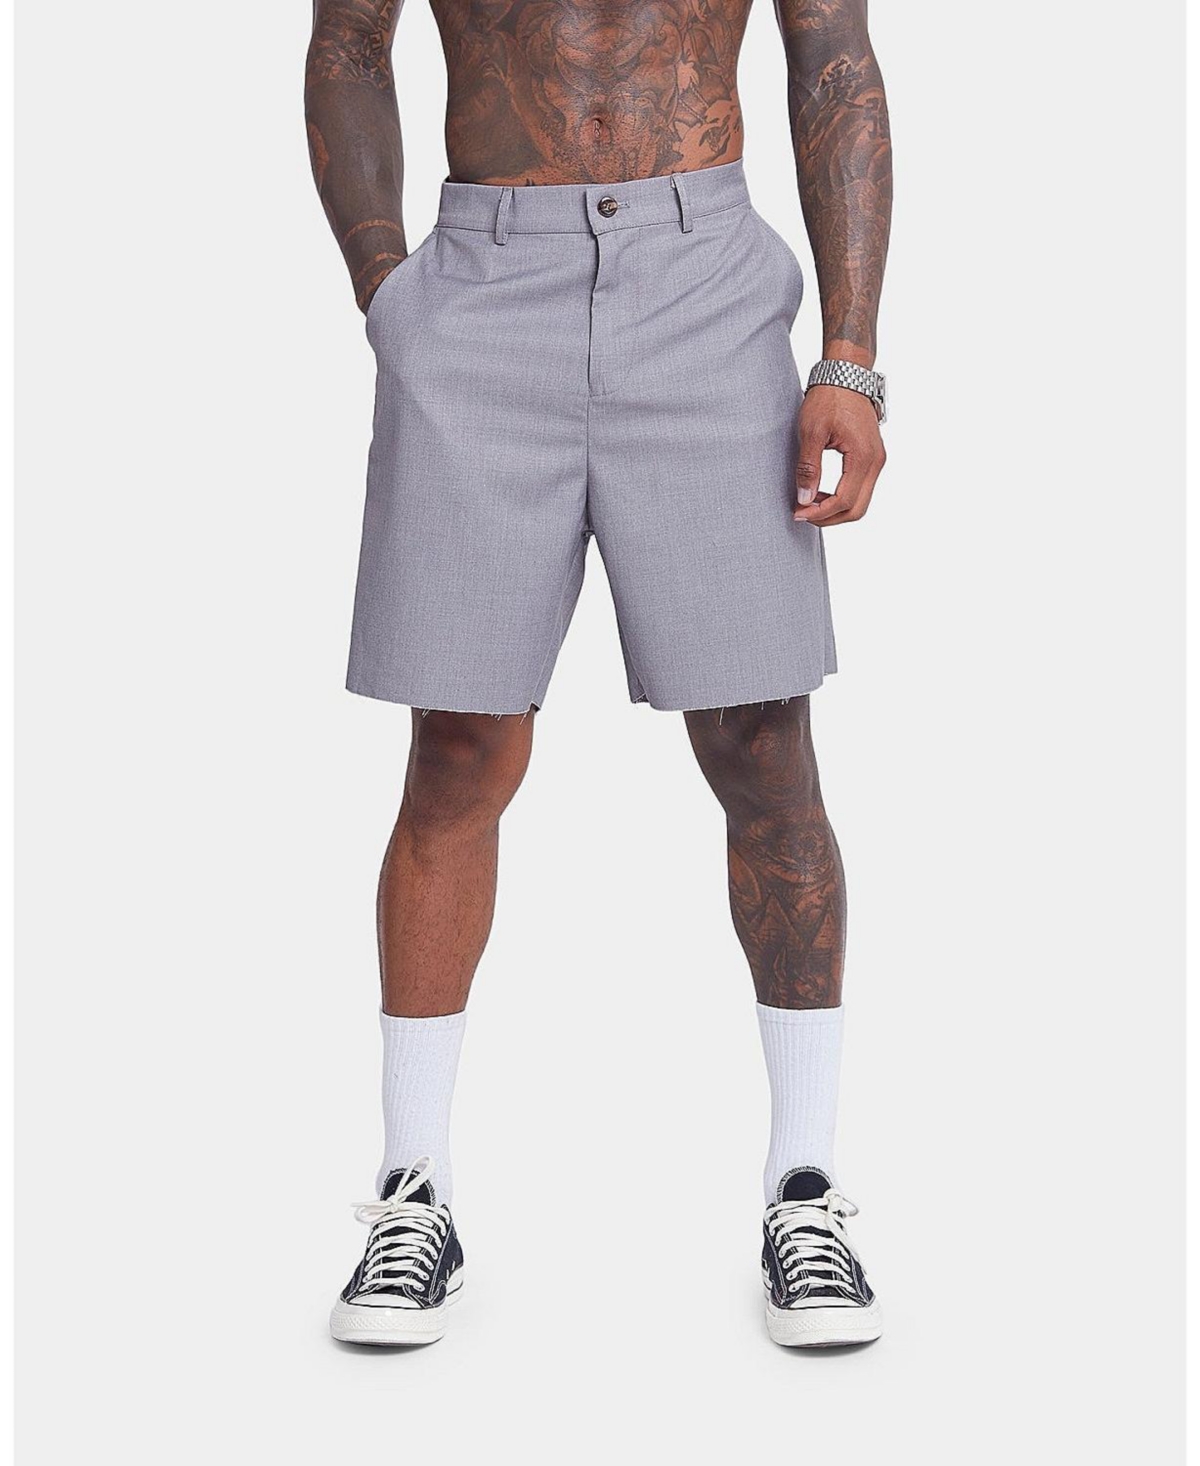 Mens Cut Off Work Shorts - Grey